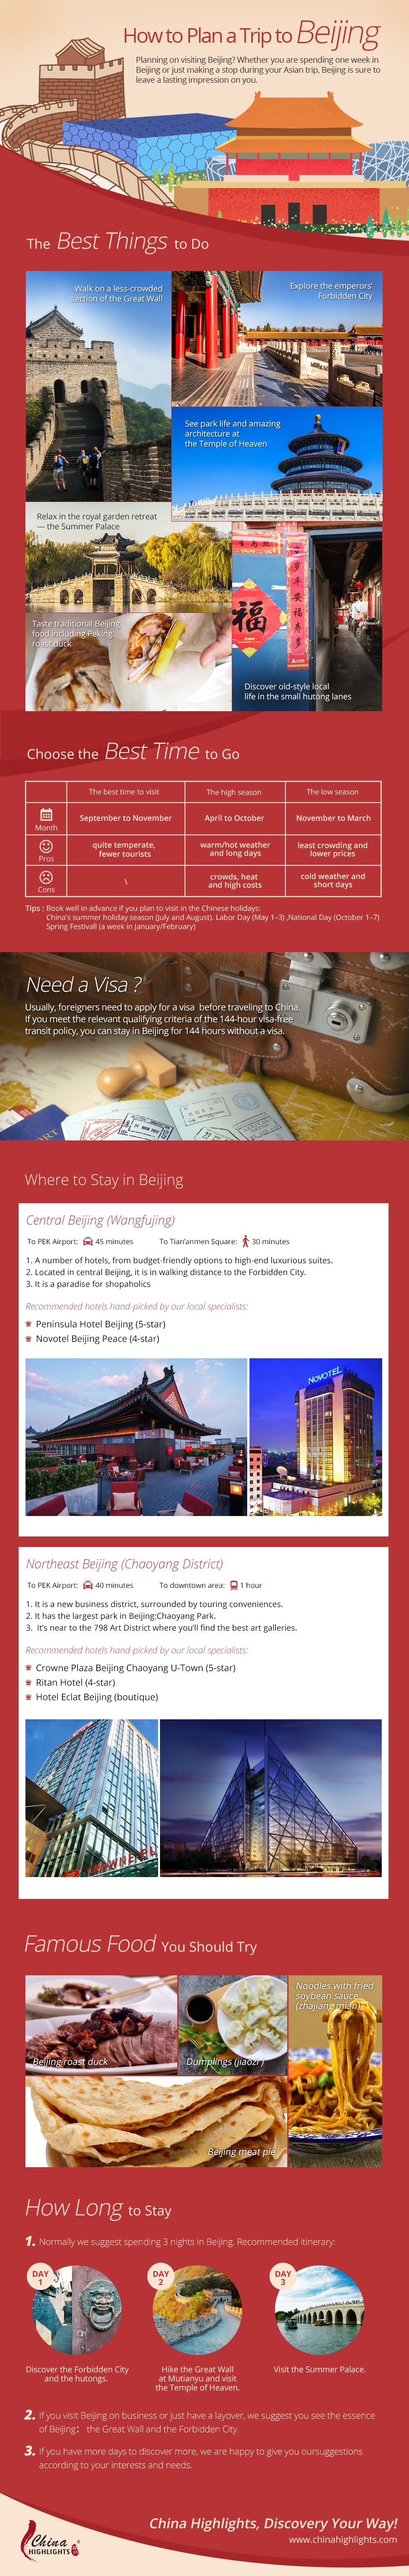 How To Plan Your Trip To Beijing Beijing Trip Planner